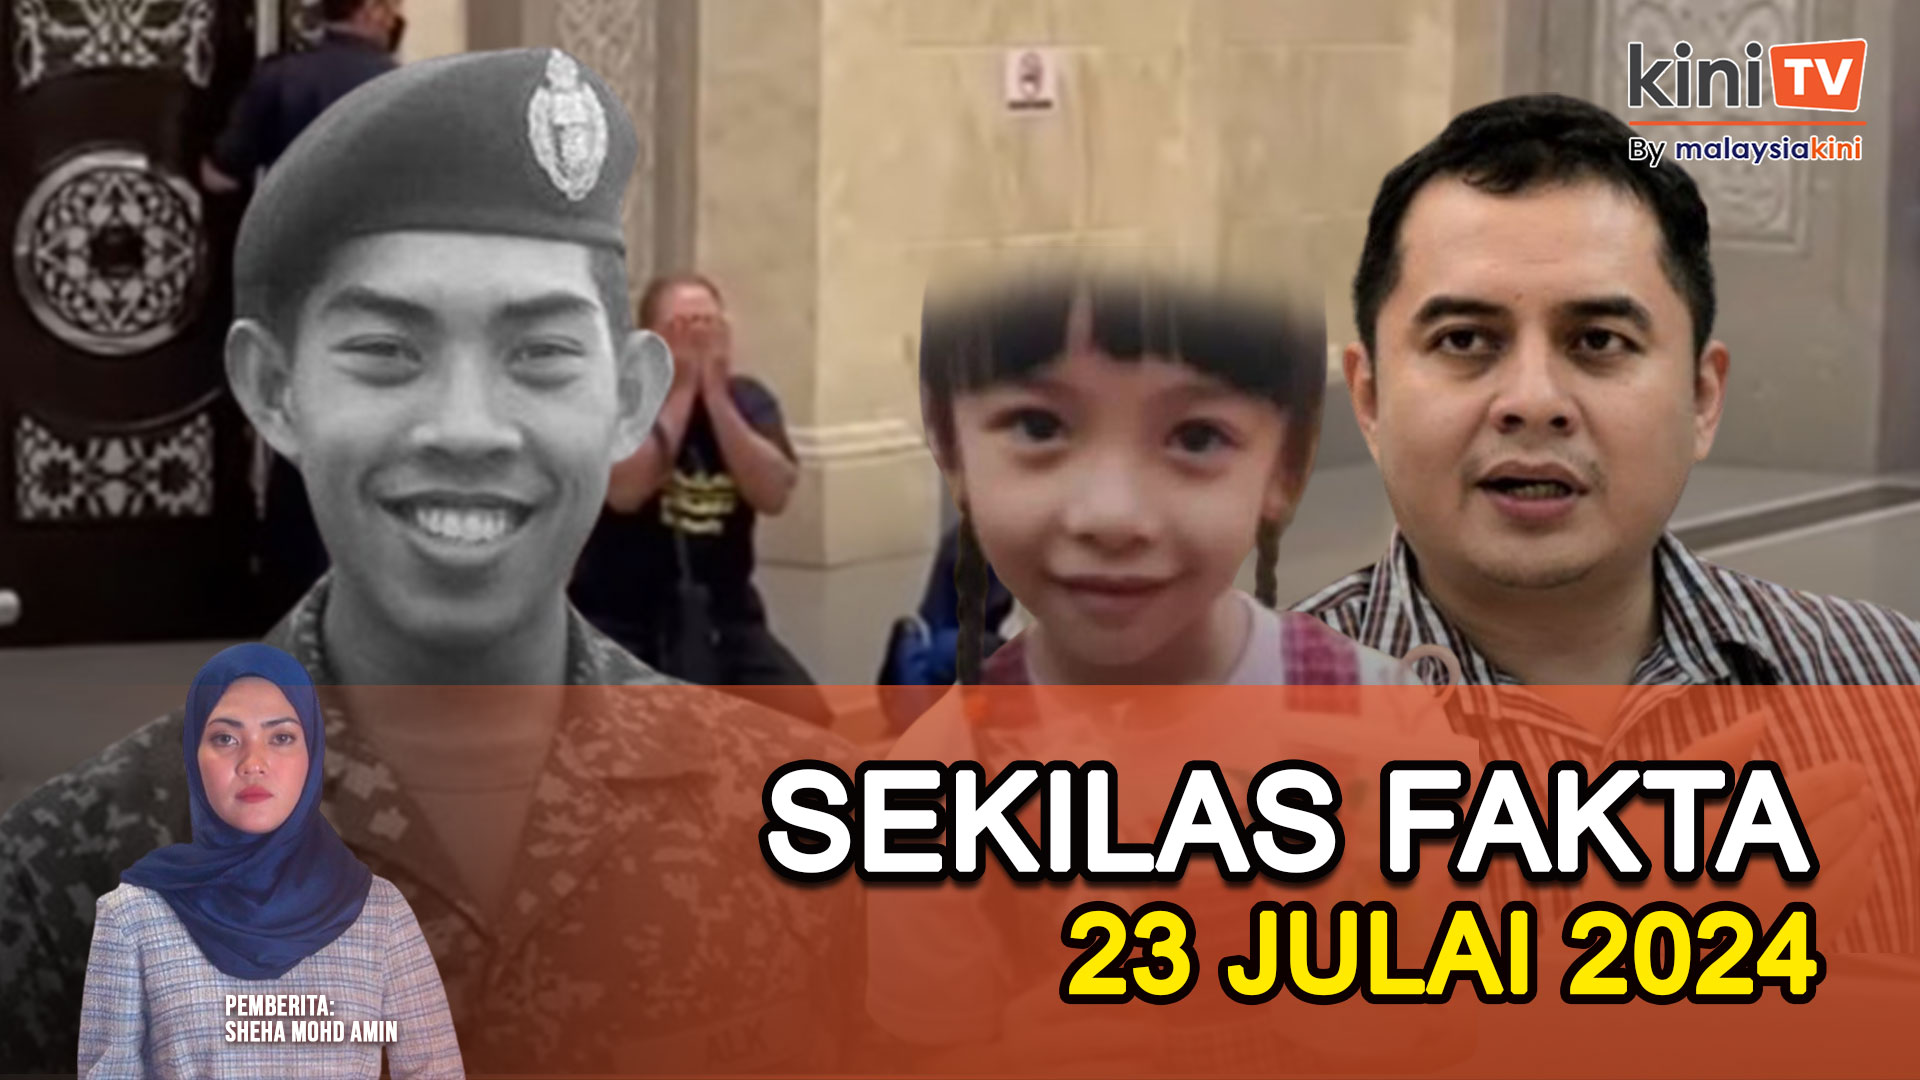 Penculik sorok budak di hotel, Pembunuh Zulfarhan ke tali gantung, Anak Najib temu PN?|SEKILAS FAKTA